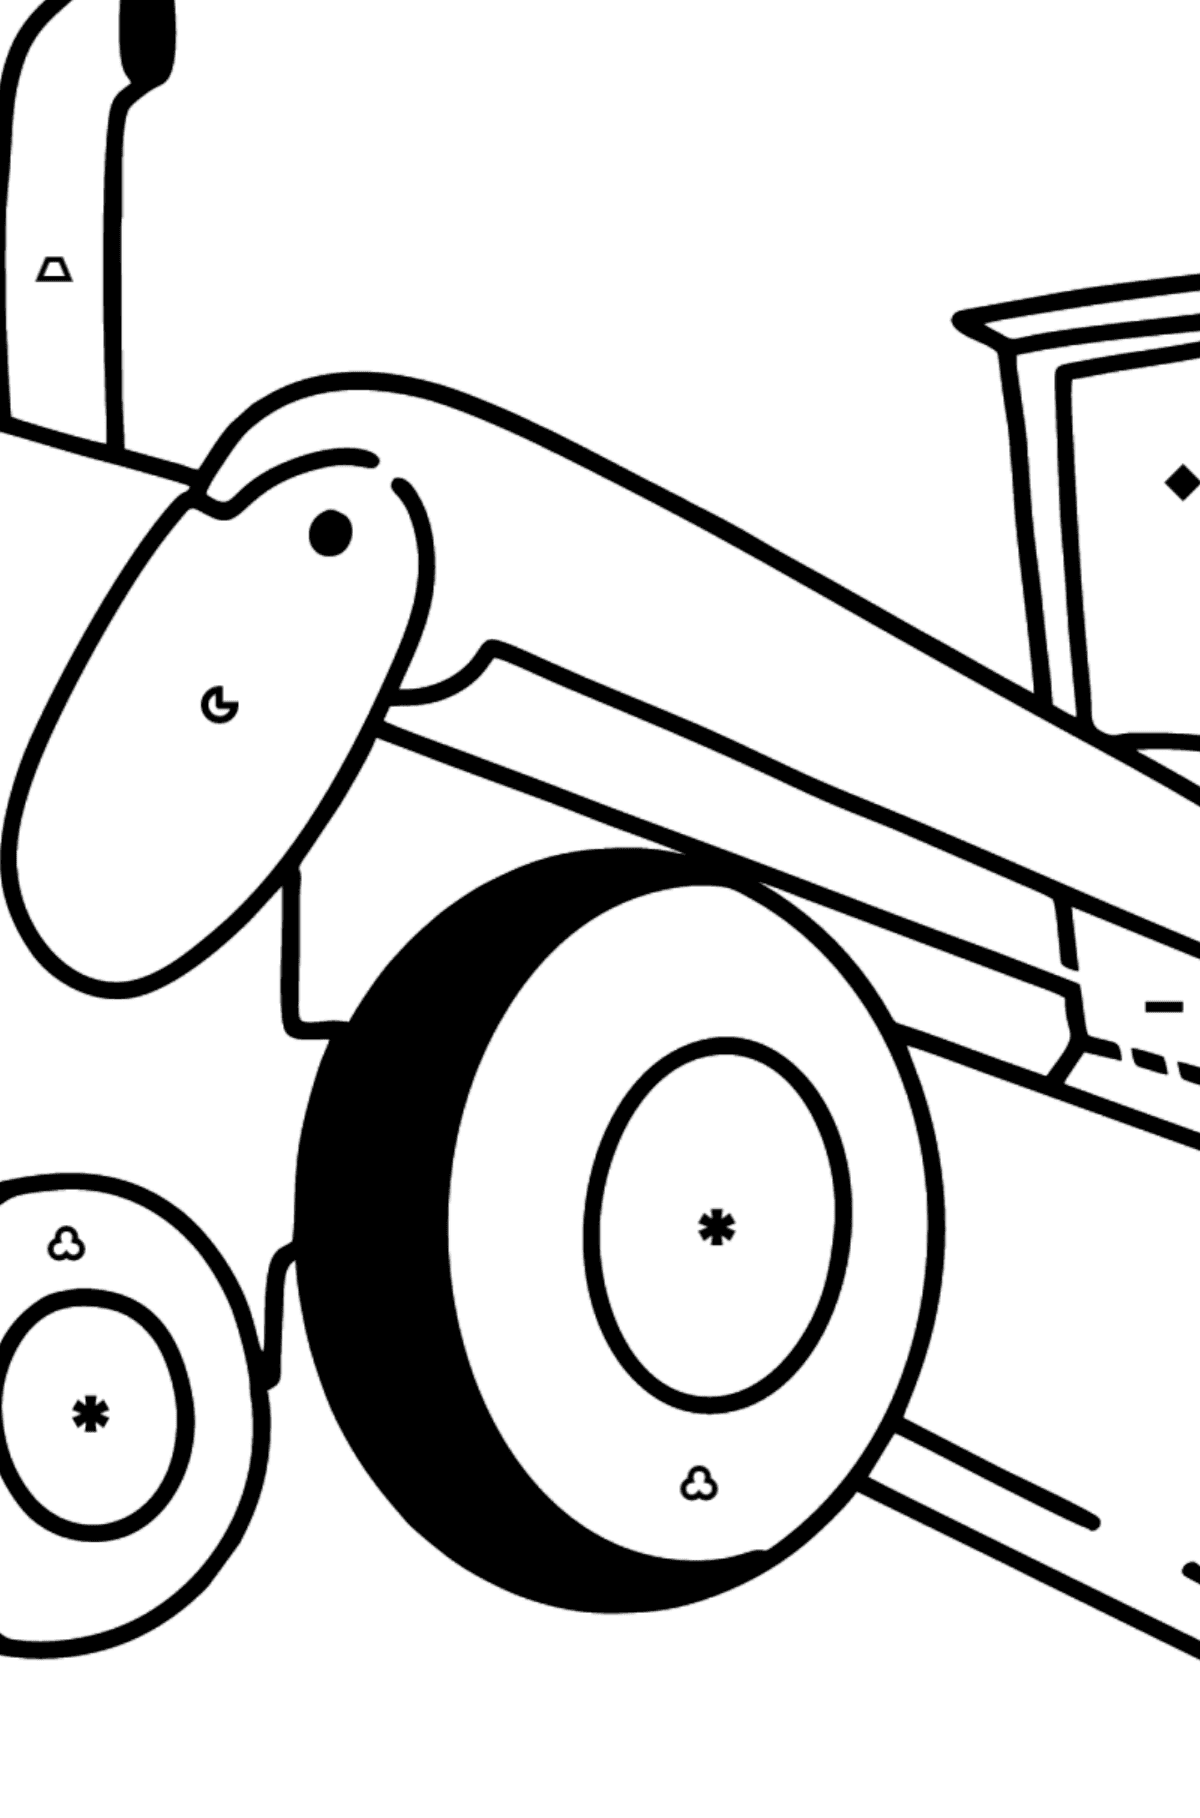 Dibujo de Tractor nivelador para colorear - Colorear por Símbolos para Niños